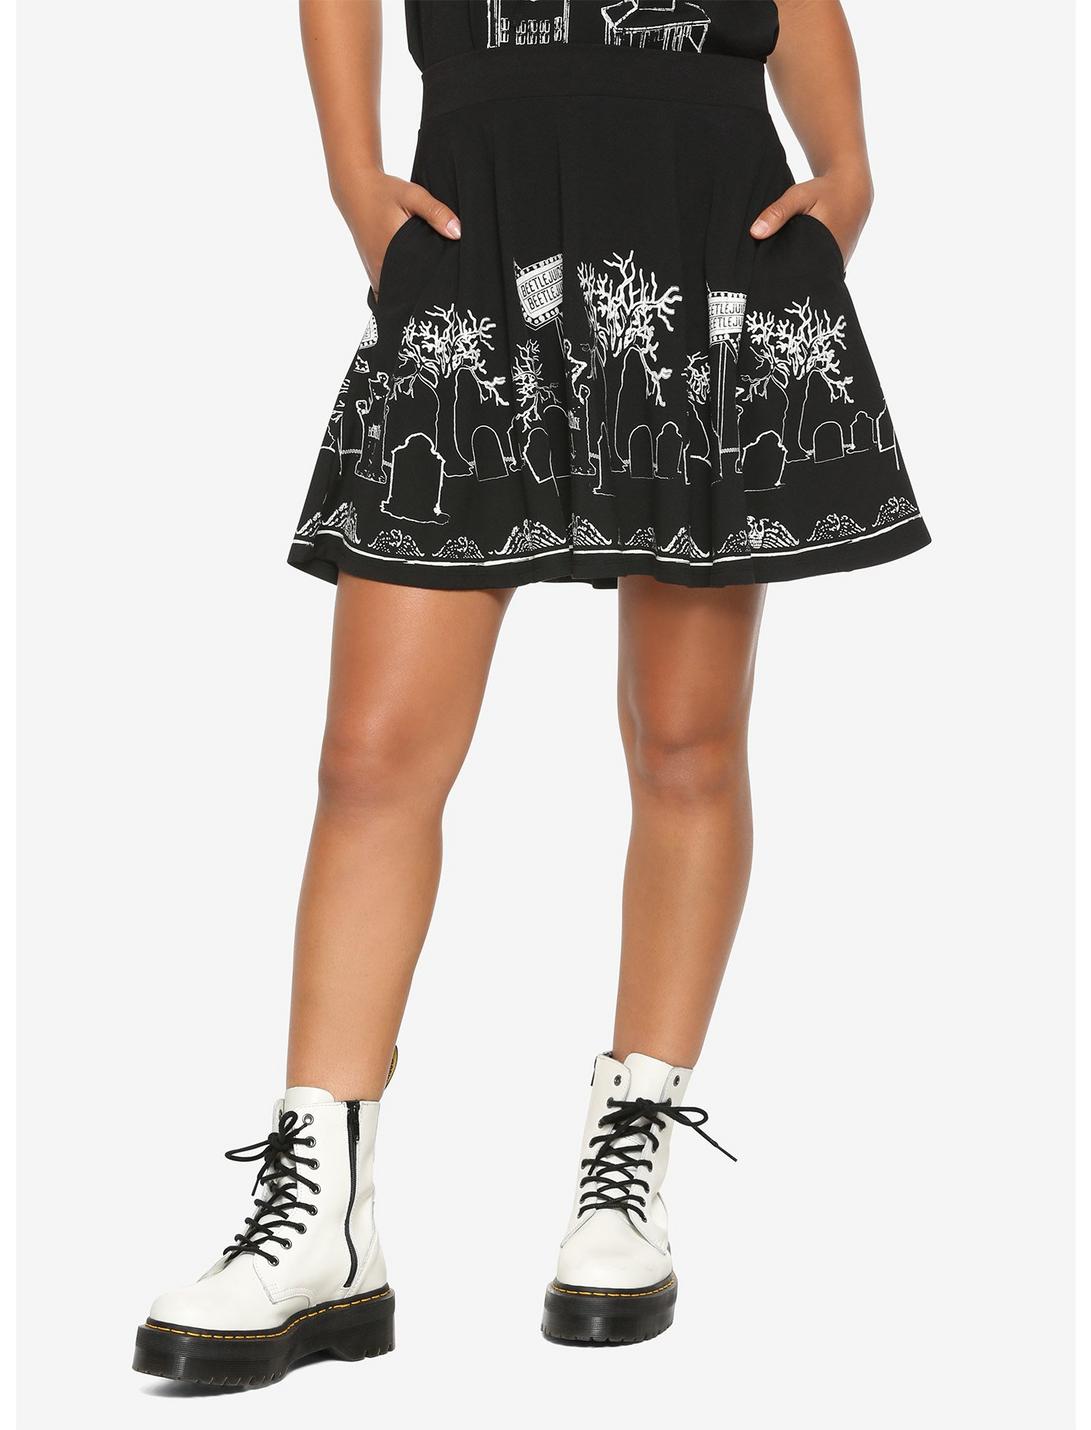 Beetlejuice Glow-In-The-Dark Graveyard Skater Skirt, BLACK, hi-res